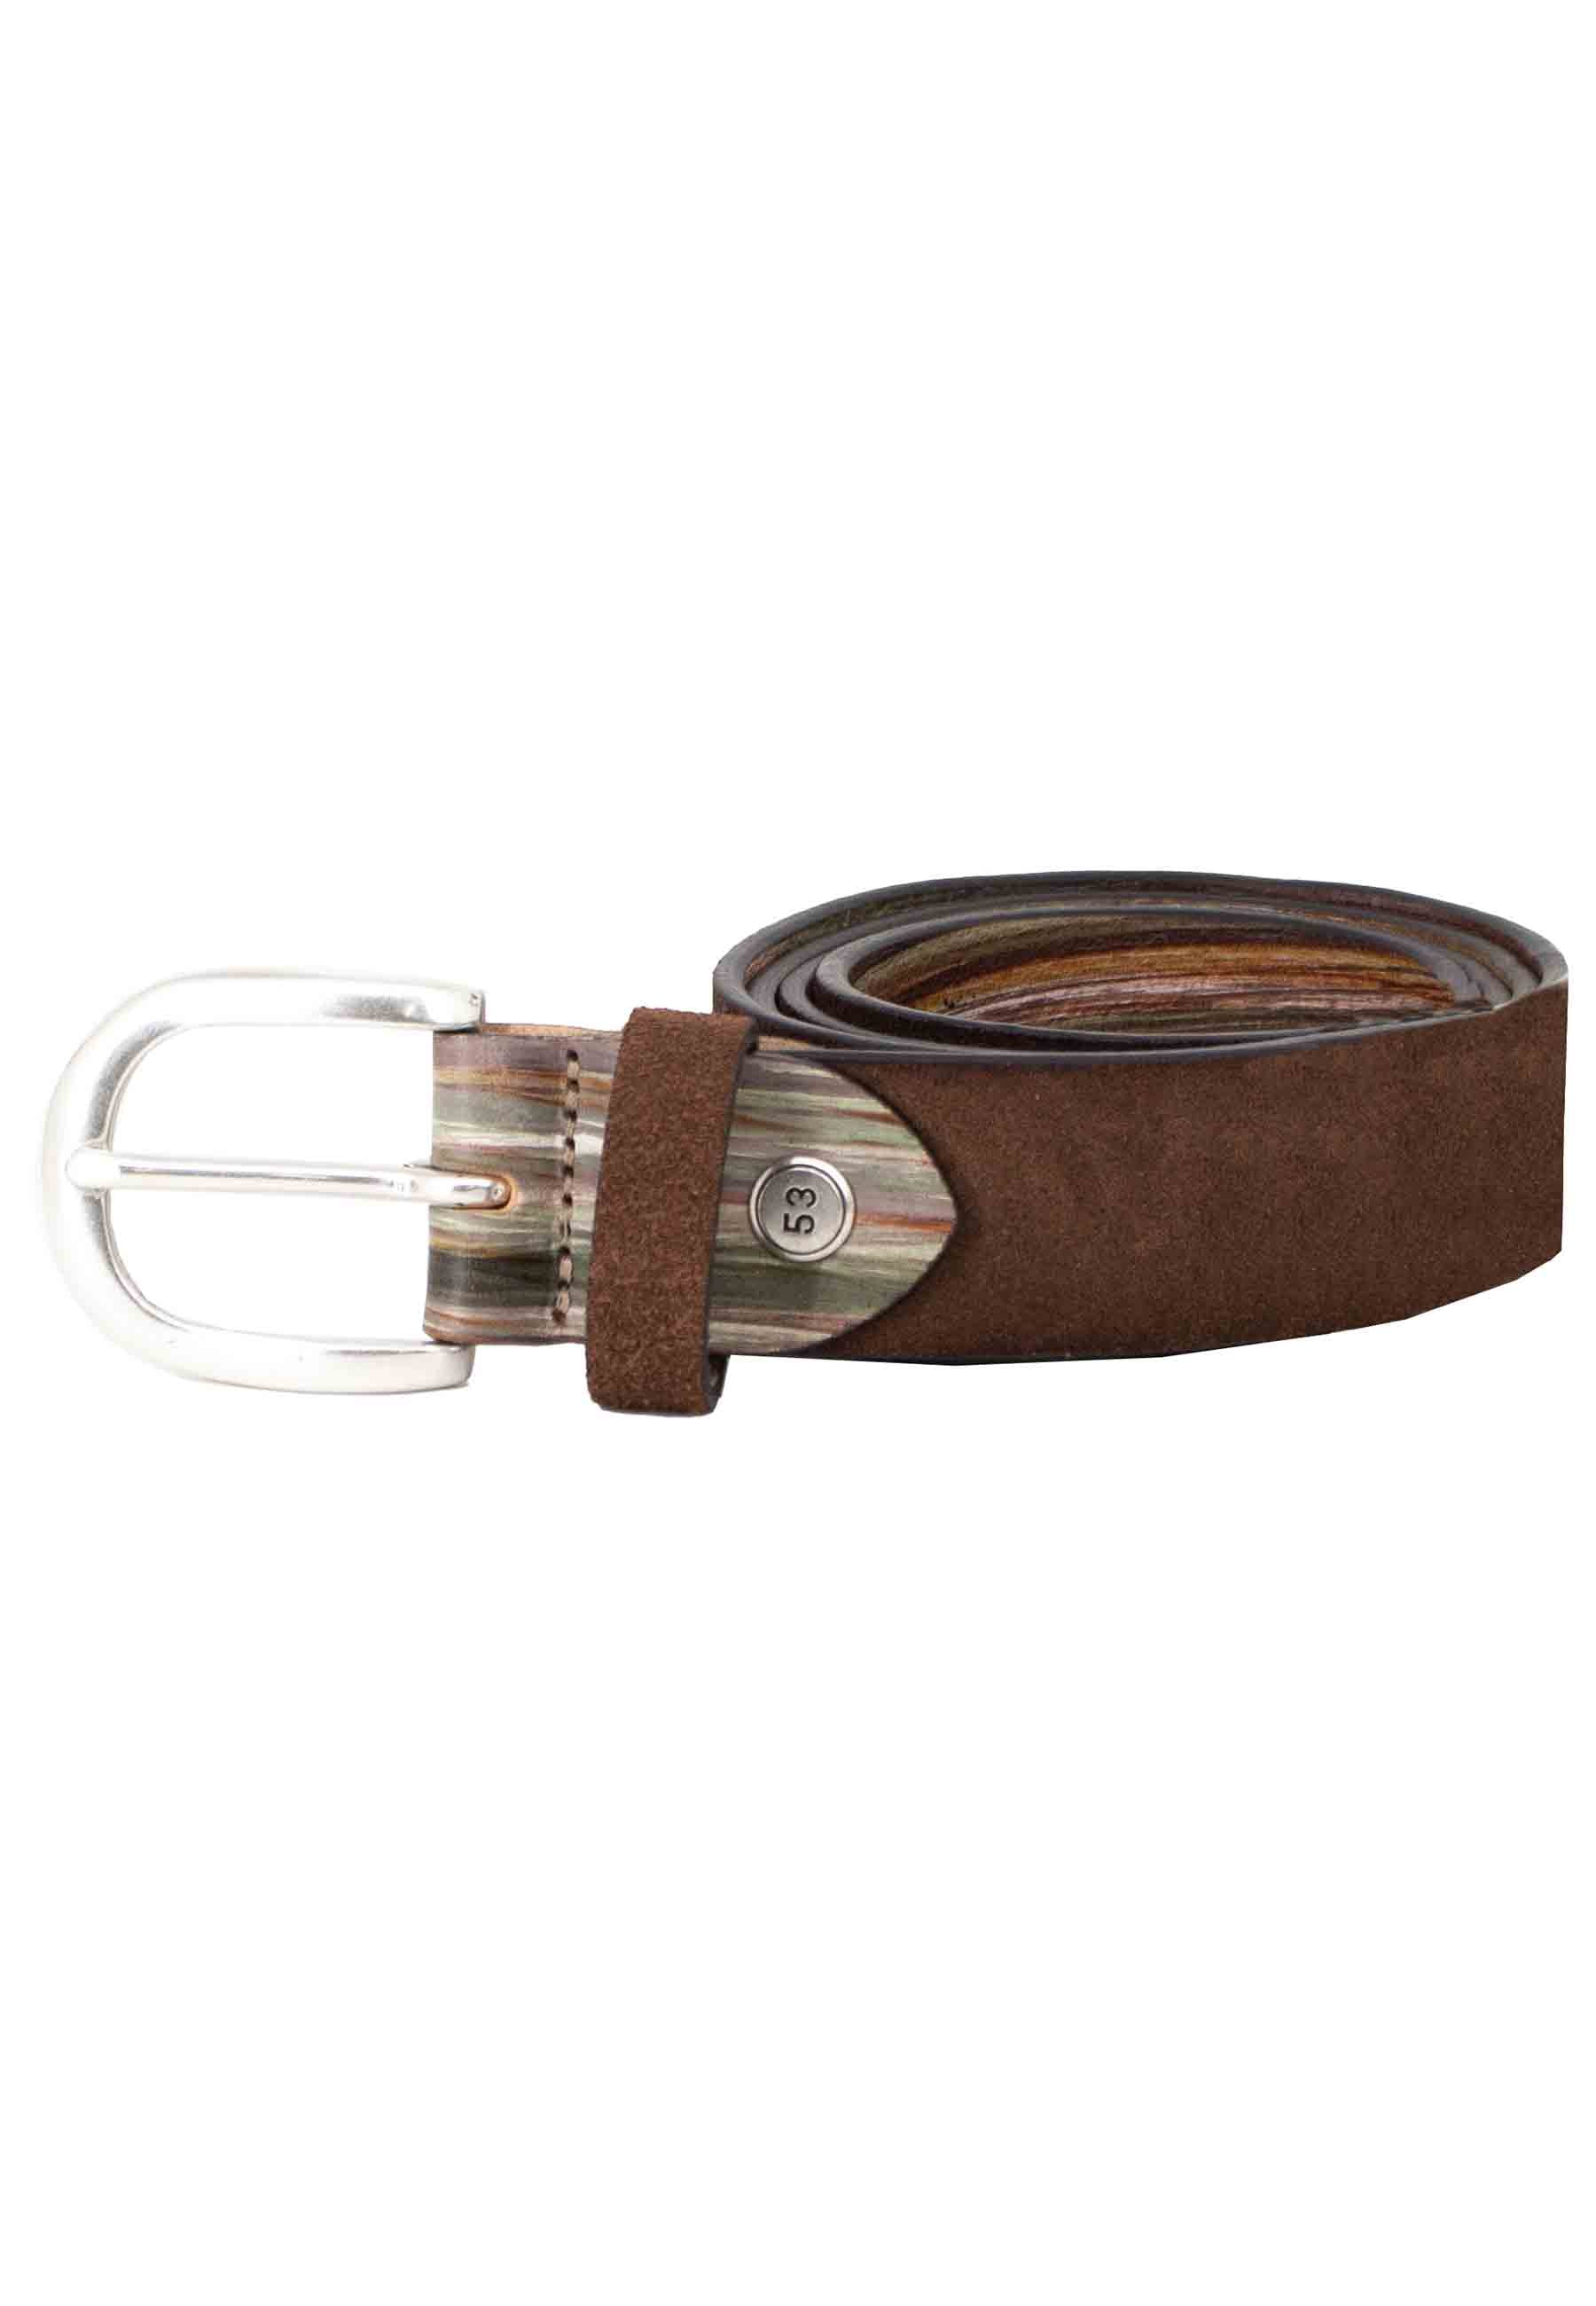 Men's brown nubuck belt with silver buckle